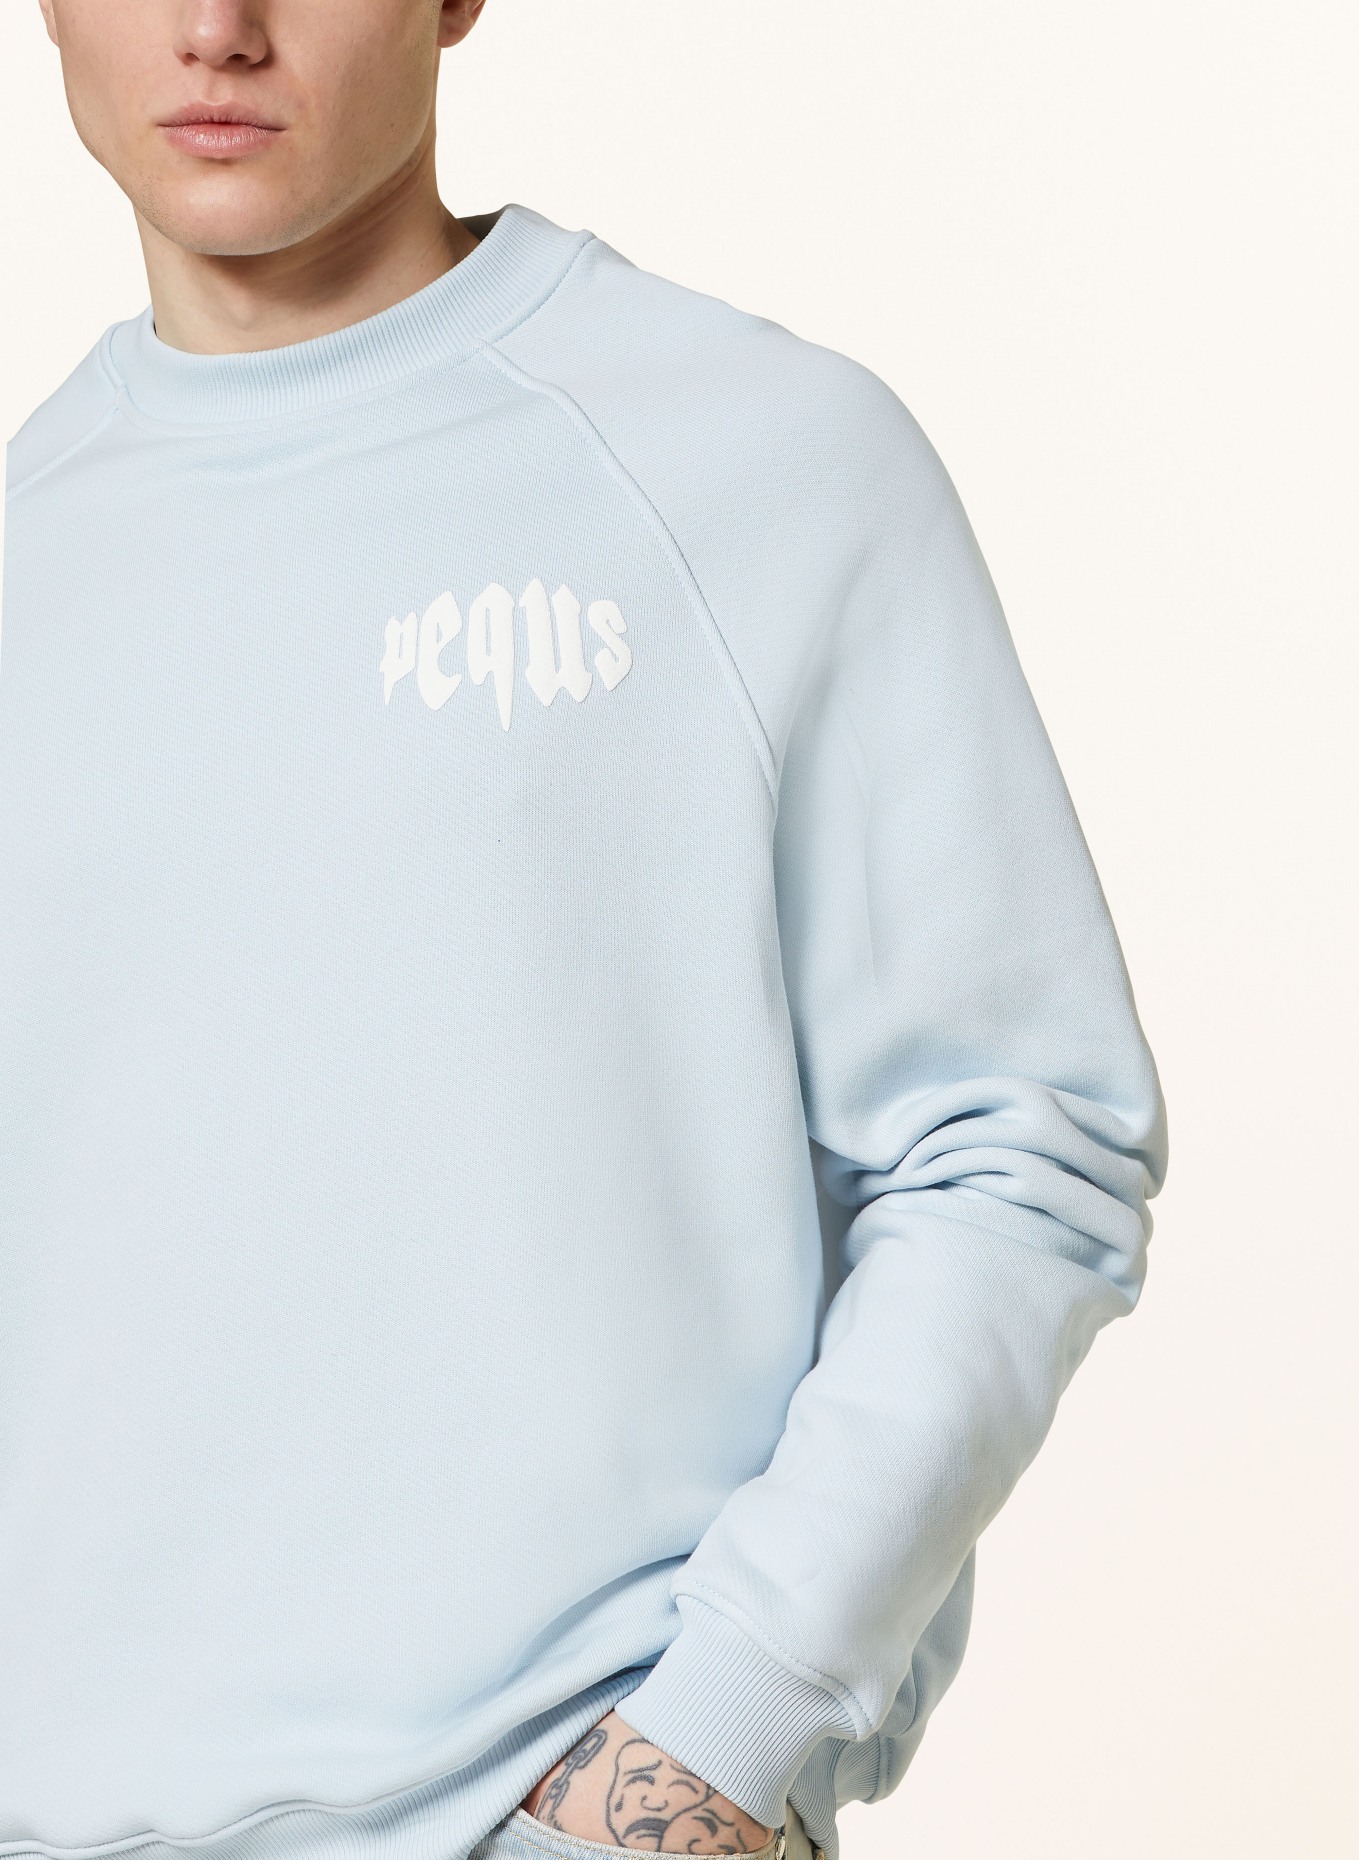 PEQUS Sweatshirt, Color: LIGHT BLUE (Image 4)